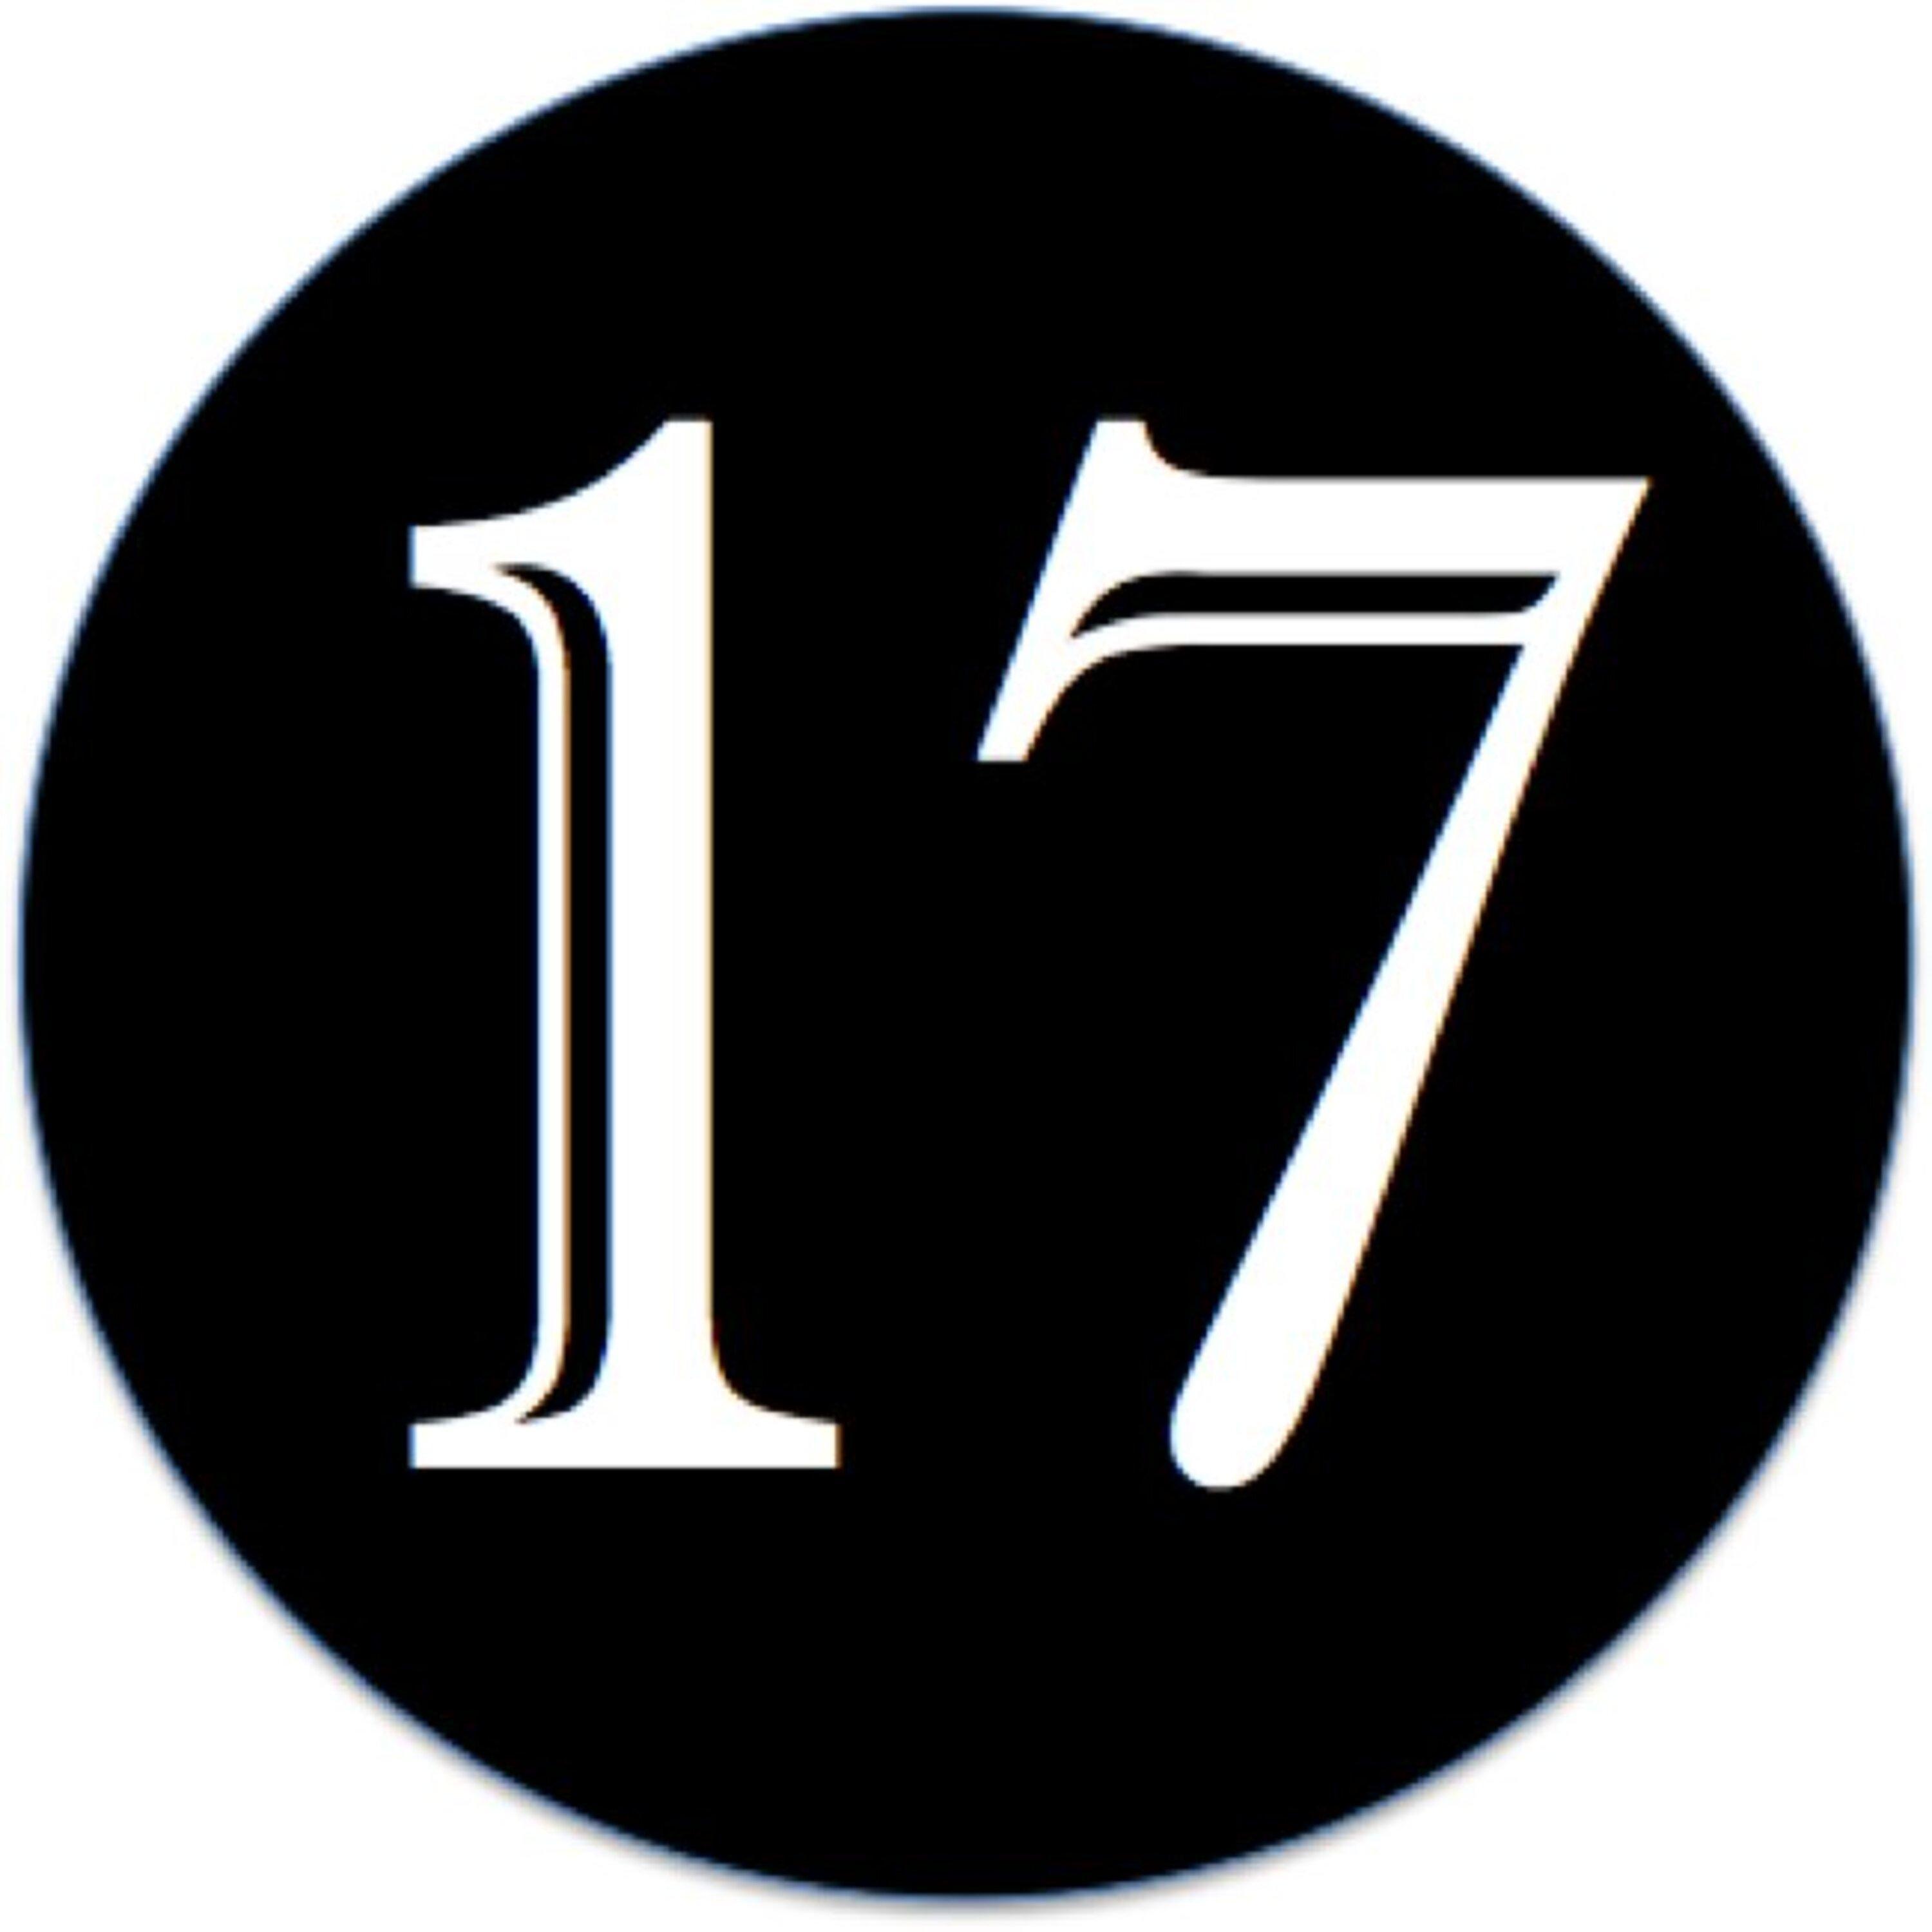 Цифра 17